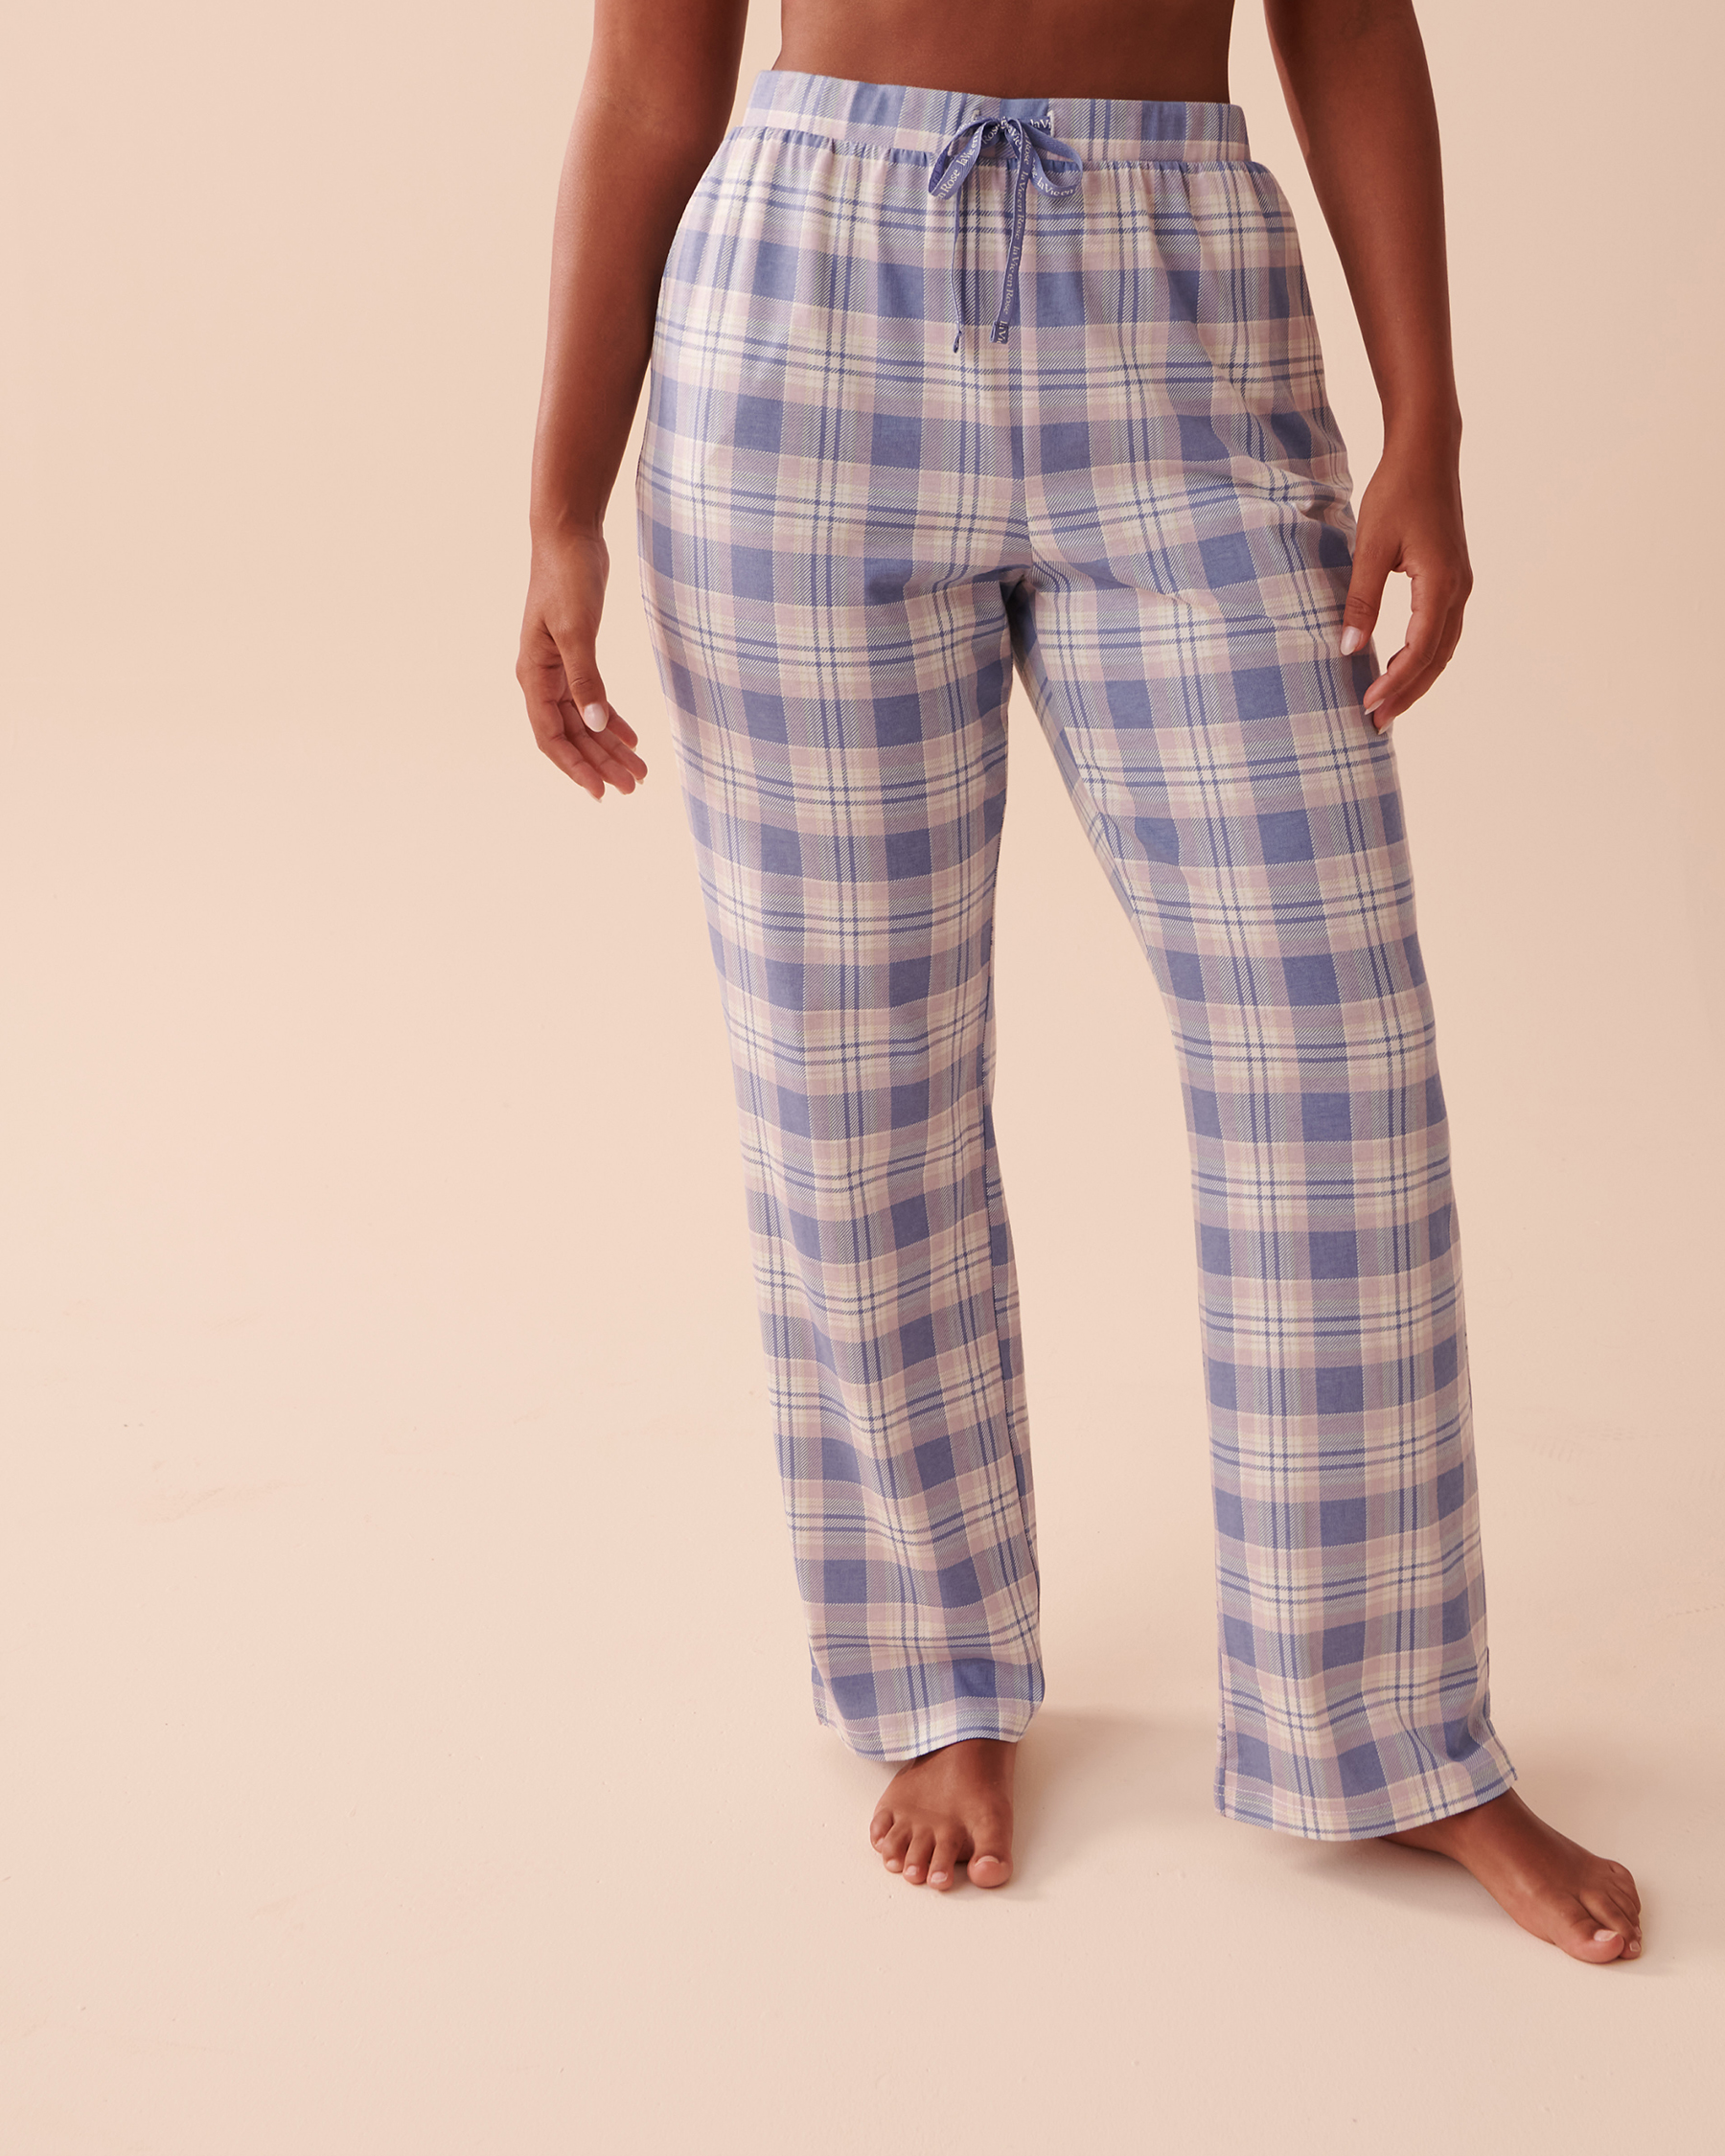 LA VIE EN ROSE Cotton Pajama Pants Blue Plaid 40200533 - View1